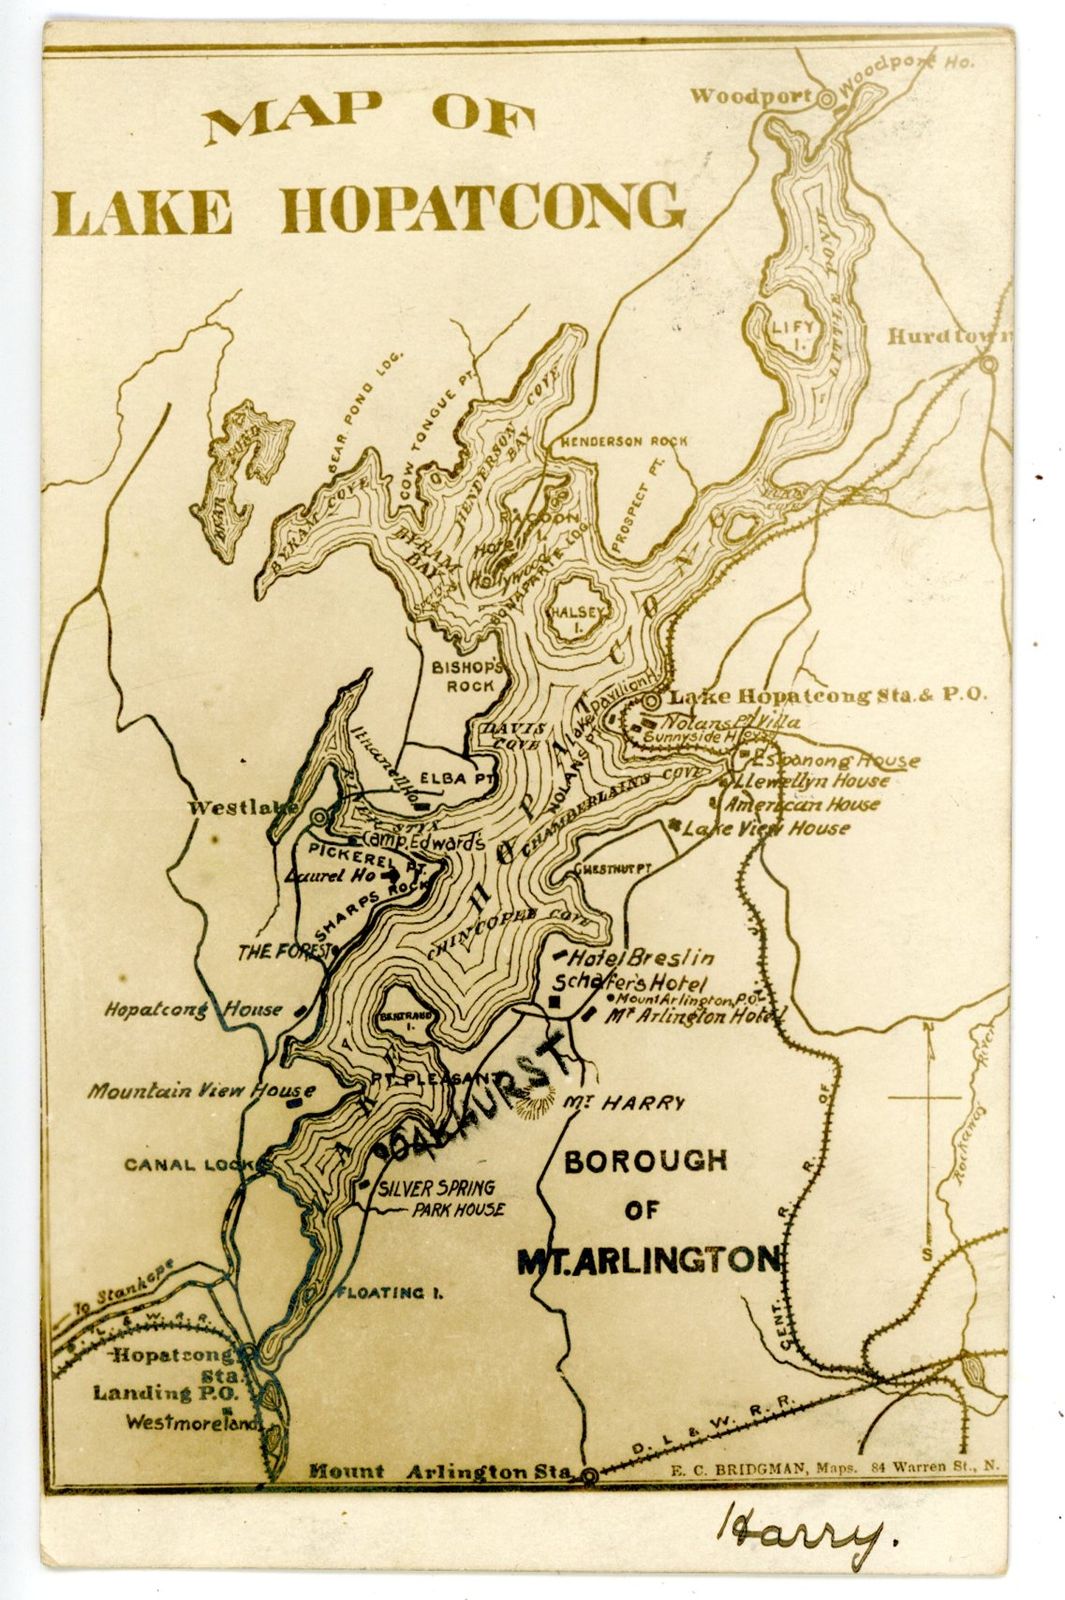 Lake Hopatcong - map - undated